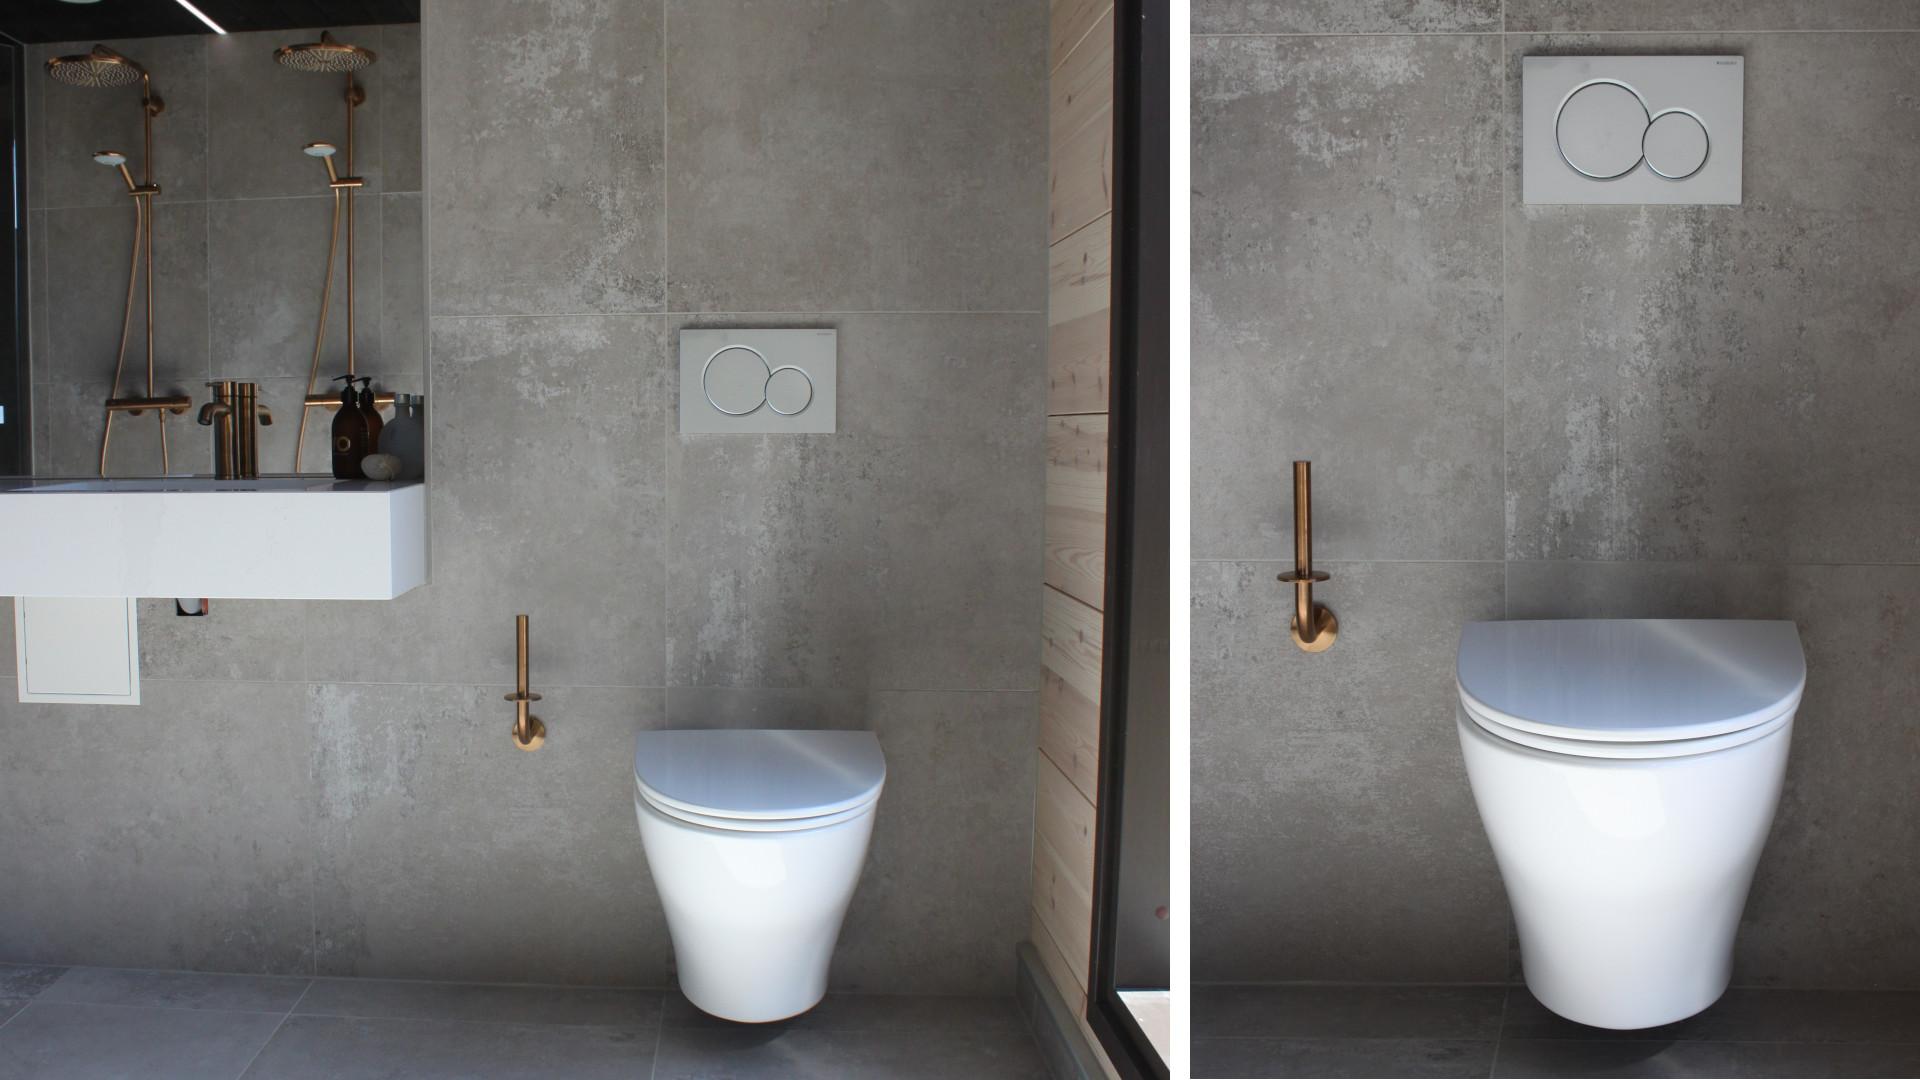 Selkeälinjainen muotoilu tekee wc-istuimesta ajattoman kauniin ja tyyliltään monenlaisiin kylpyhuoneisiin sopivan.